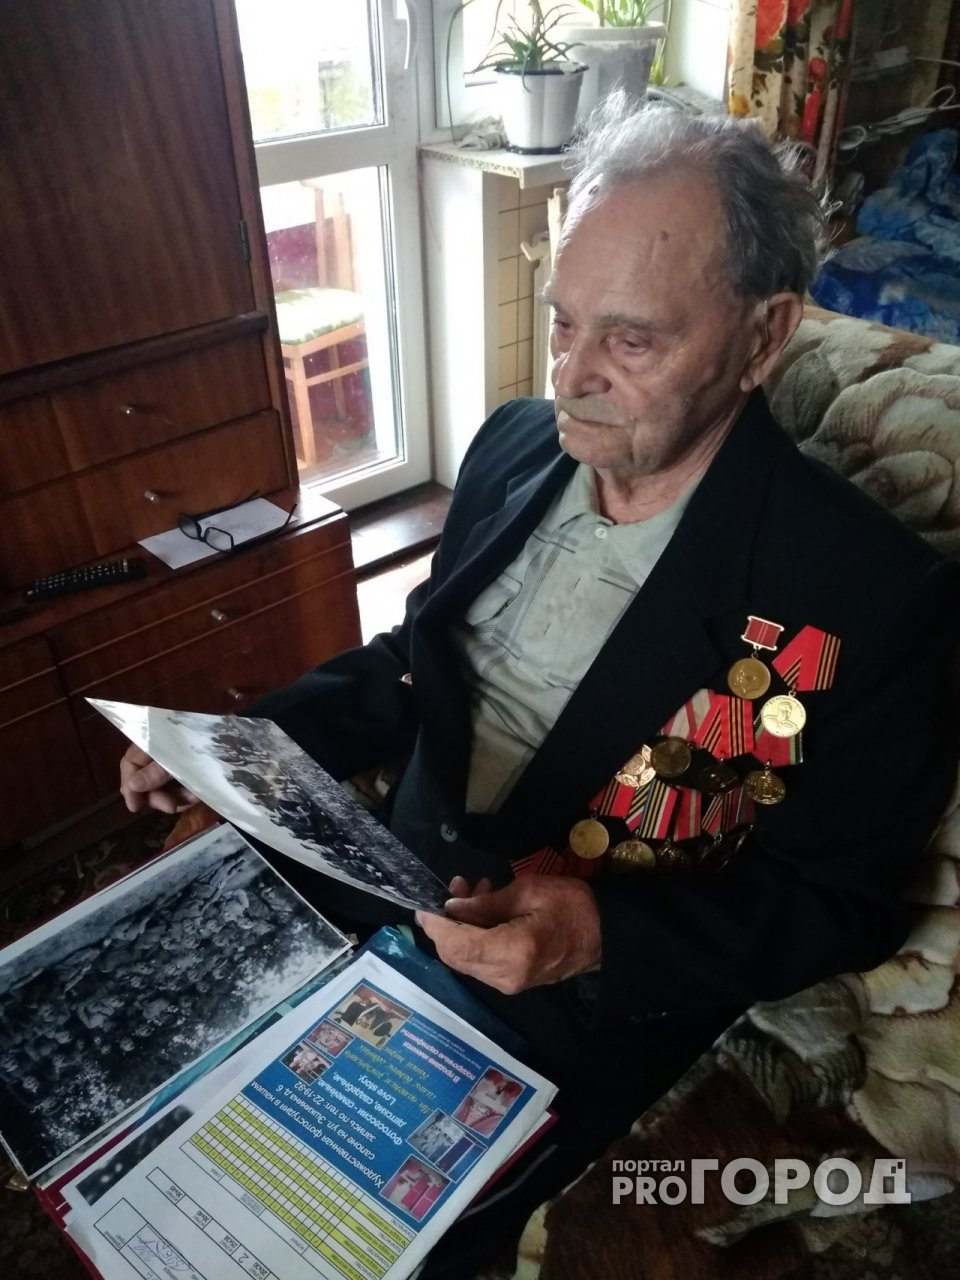 Ветеран Великой Отечественной войны из Марий Эл: "Мне до сих пор снится, как я под обстрелом бегу"